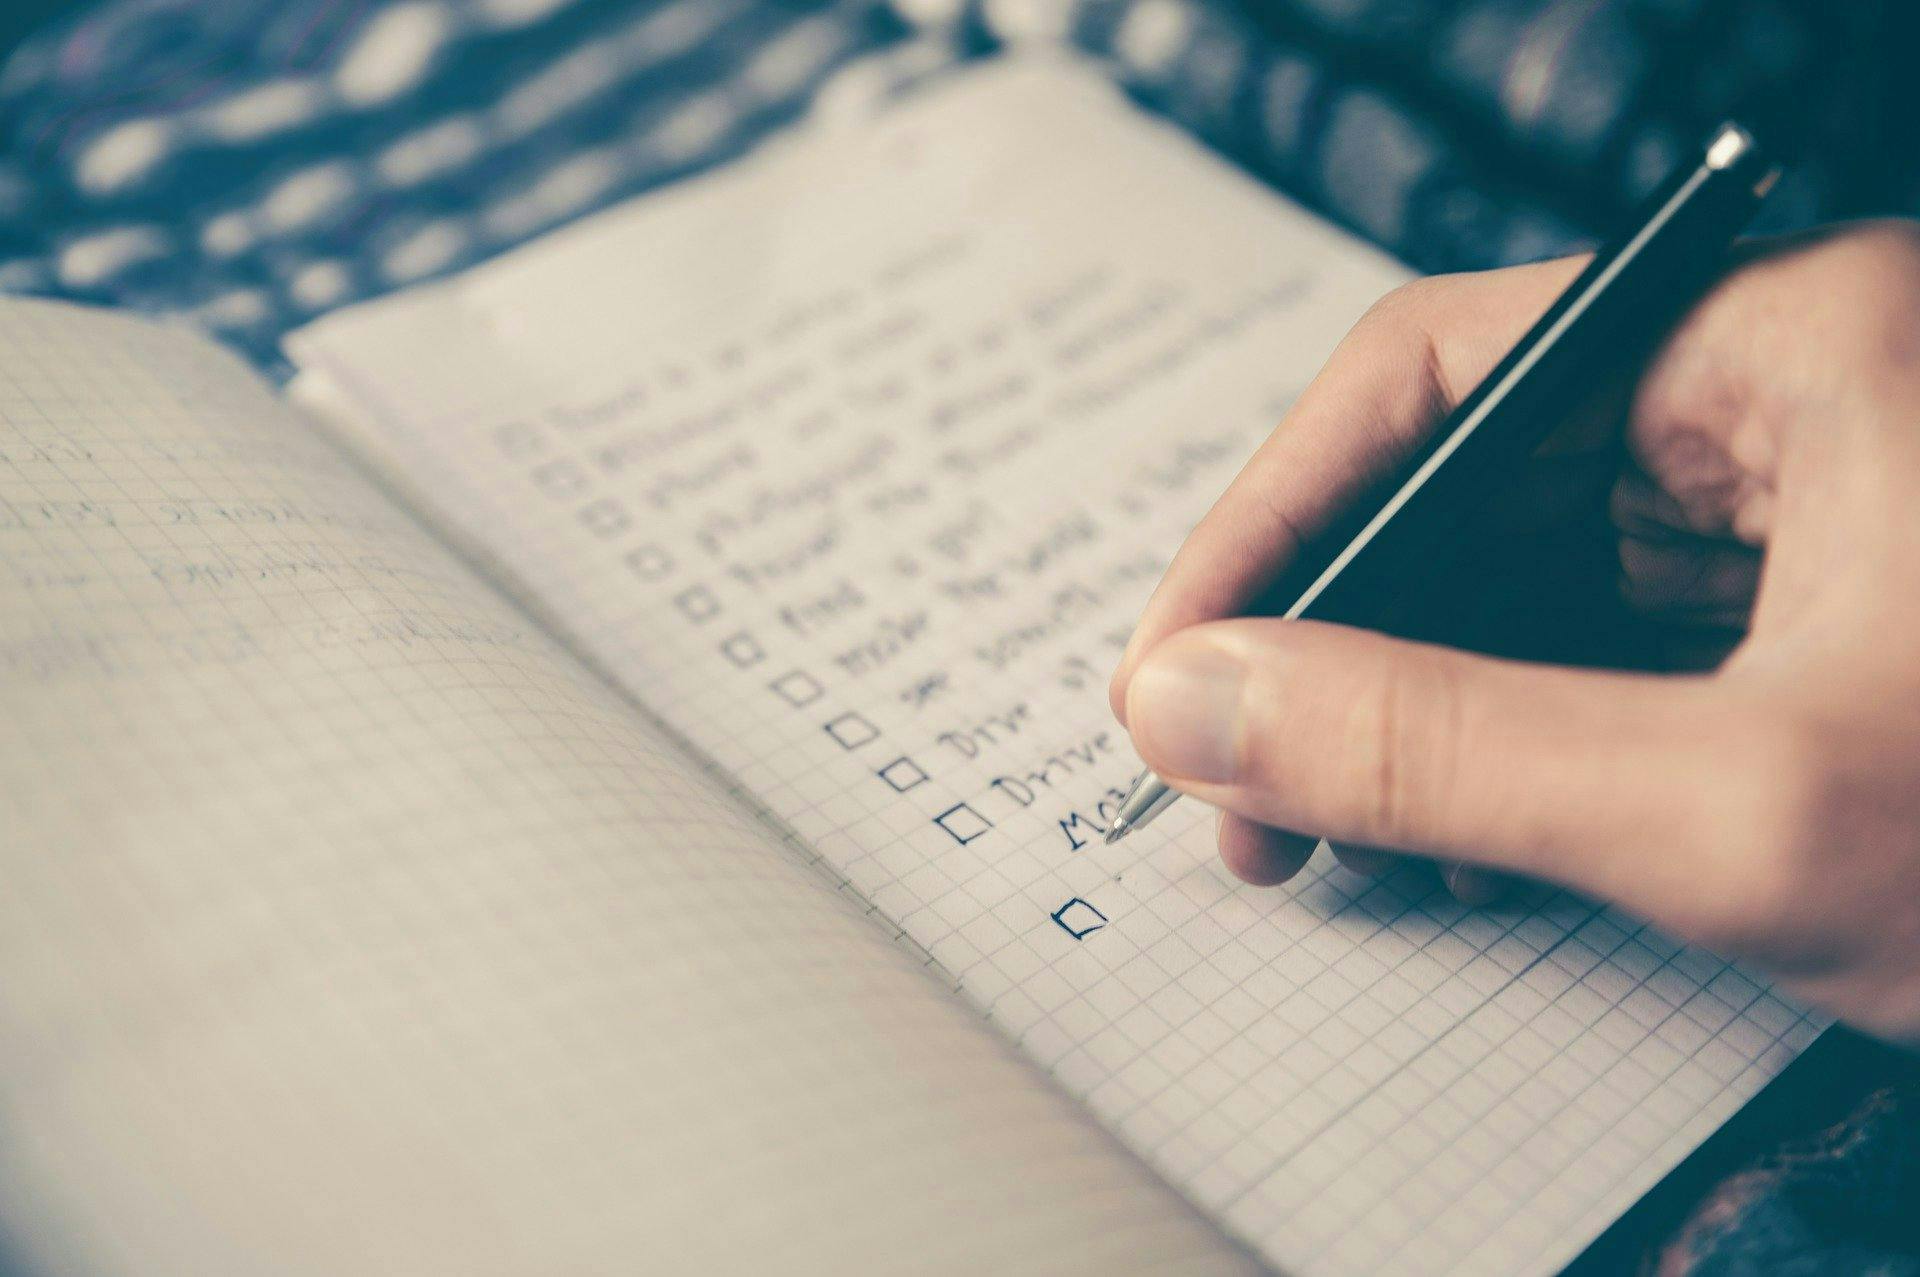 checklist on notebook